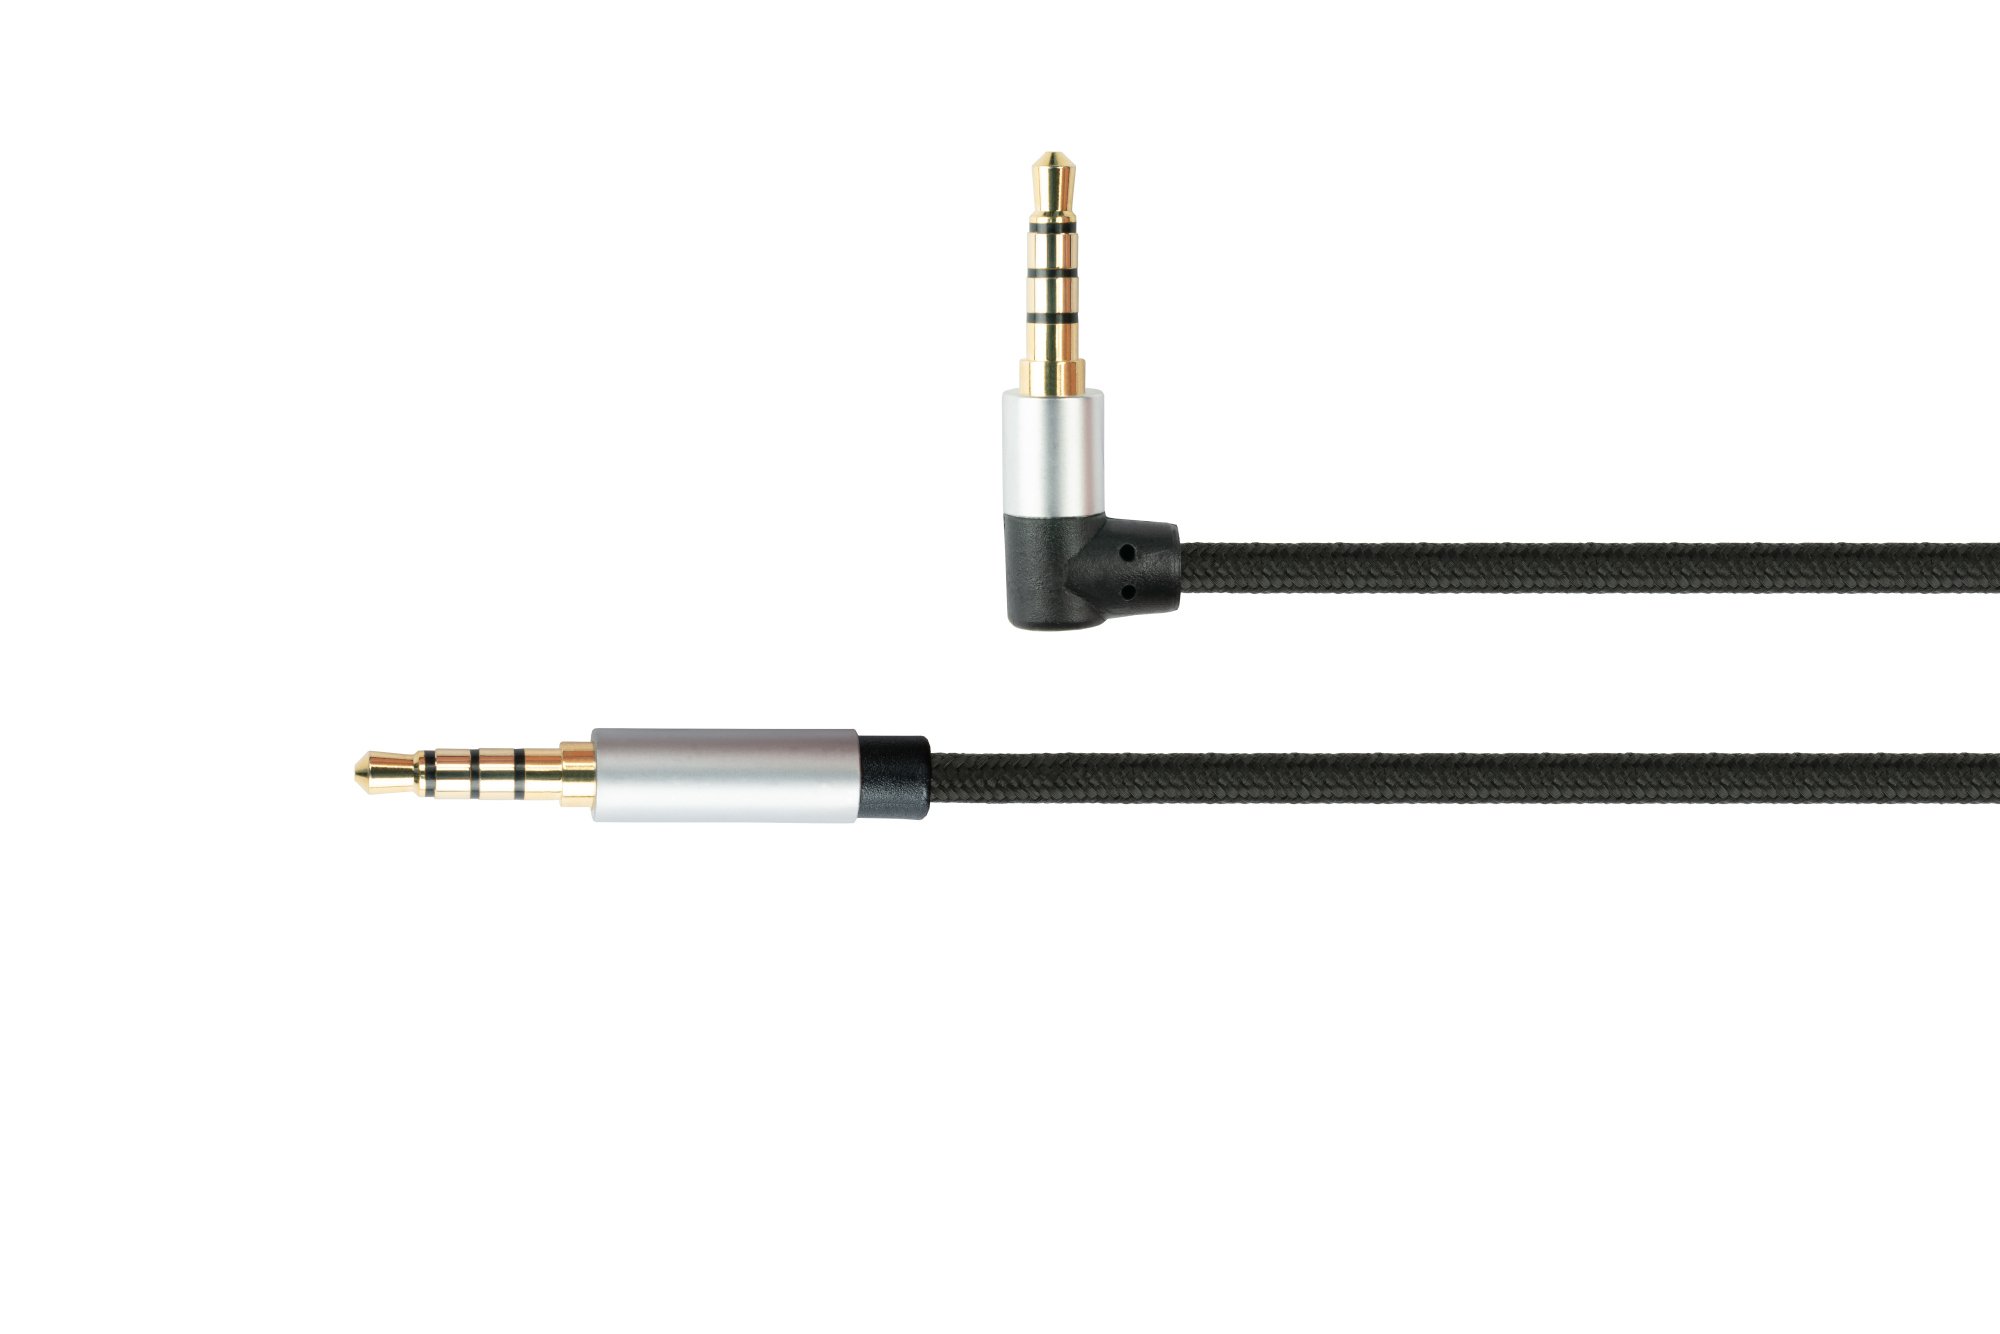 Audio Anschlusskabel High-Quality, 4-poliger 3,5mm Klinkenstecker an Klinkenstecker gewinkelt, Textilmantel, schwarz, 1m